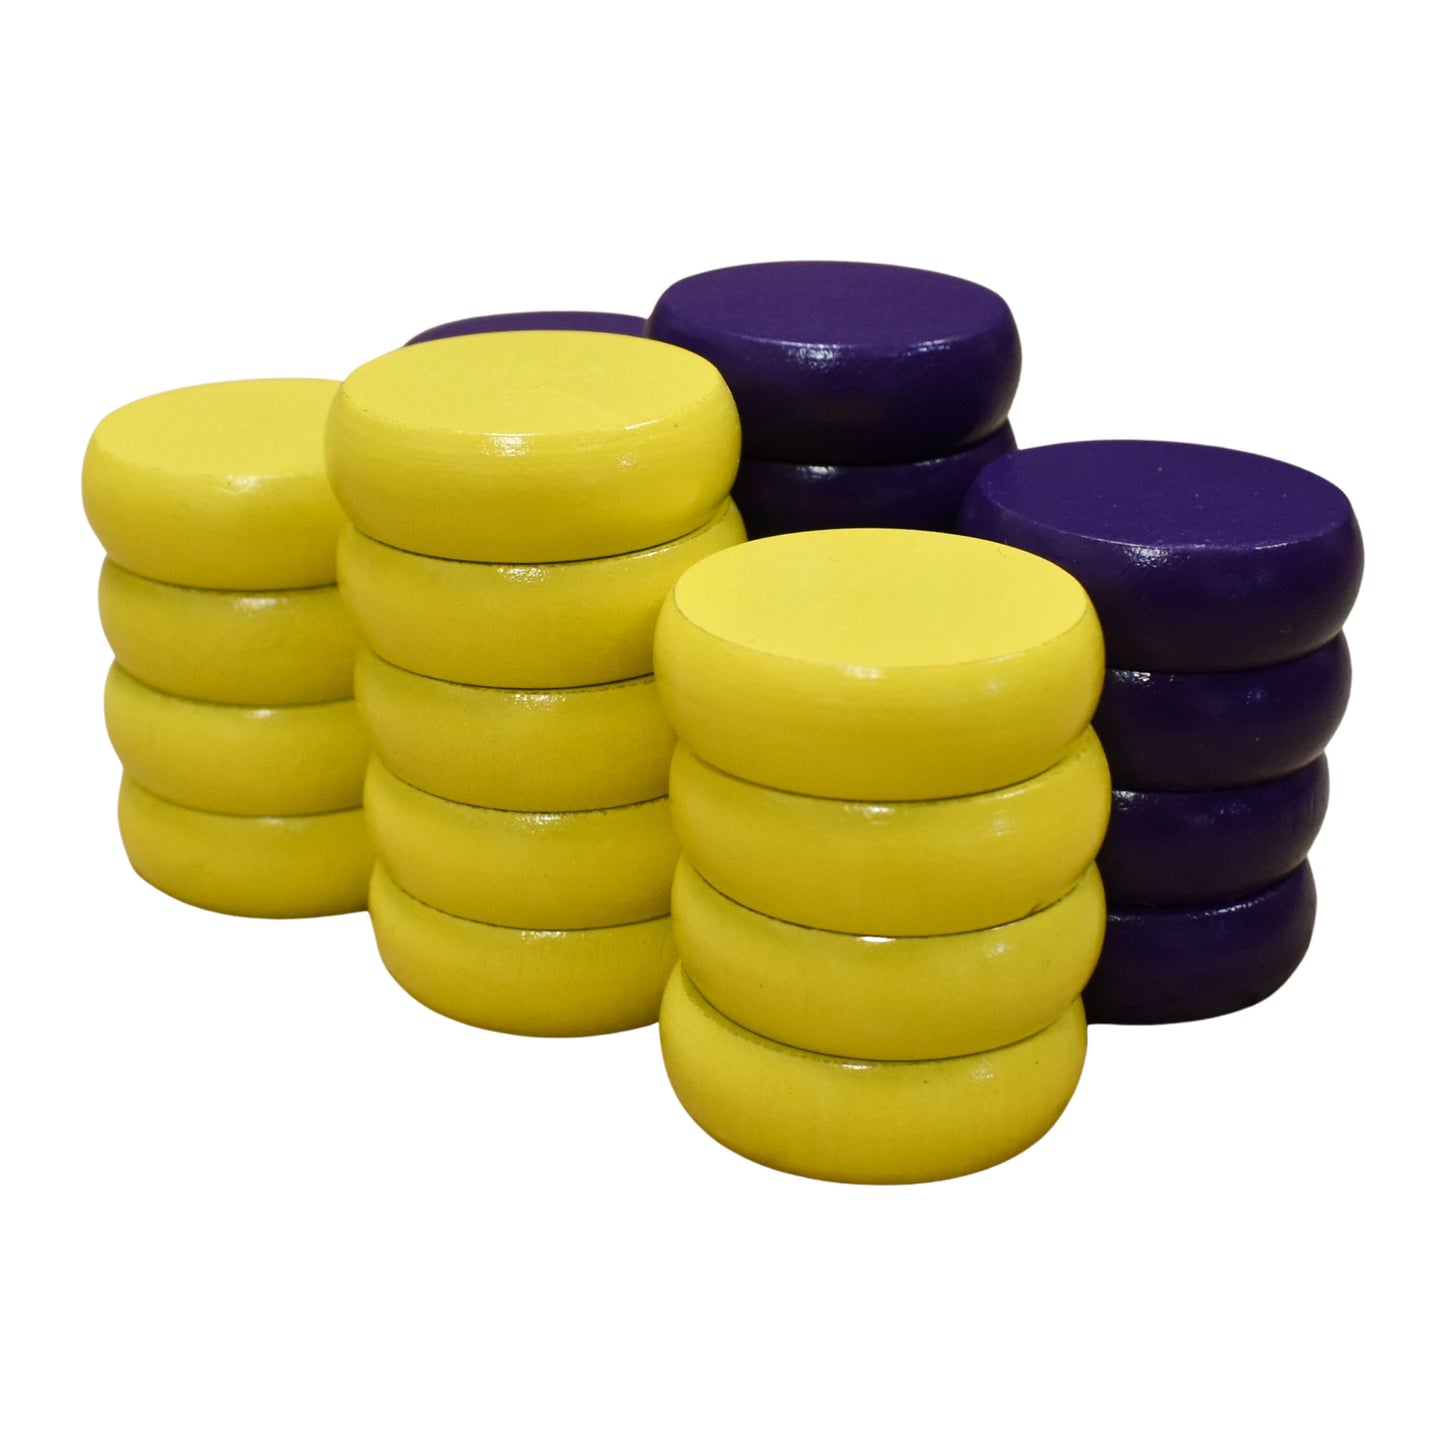 26 クロキノール ディスク (黄色と紫) 